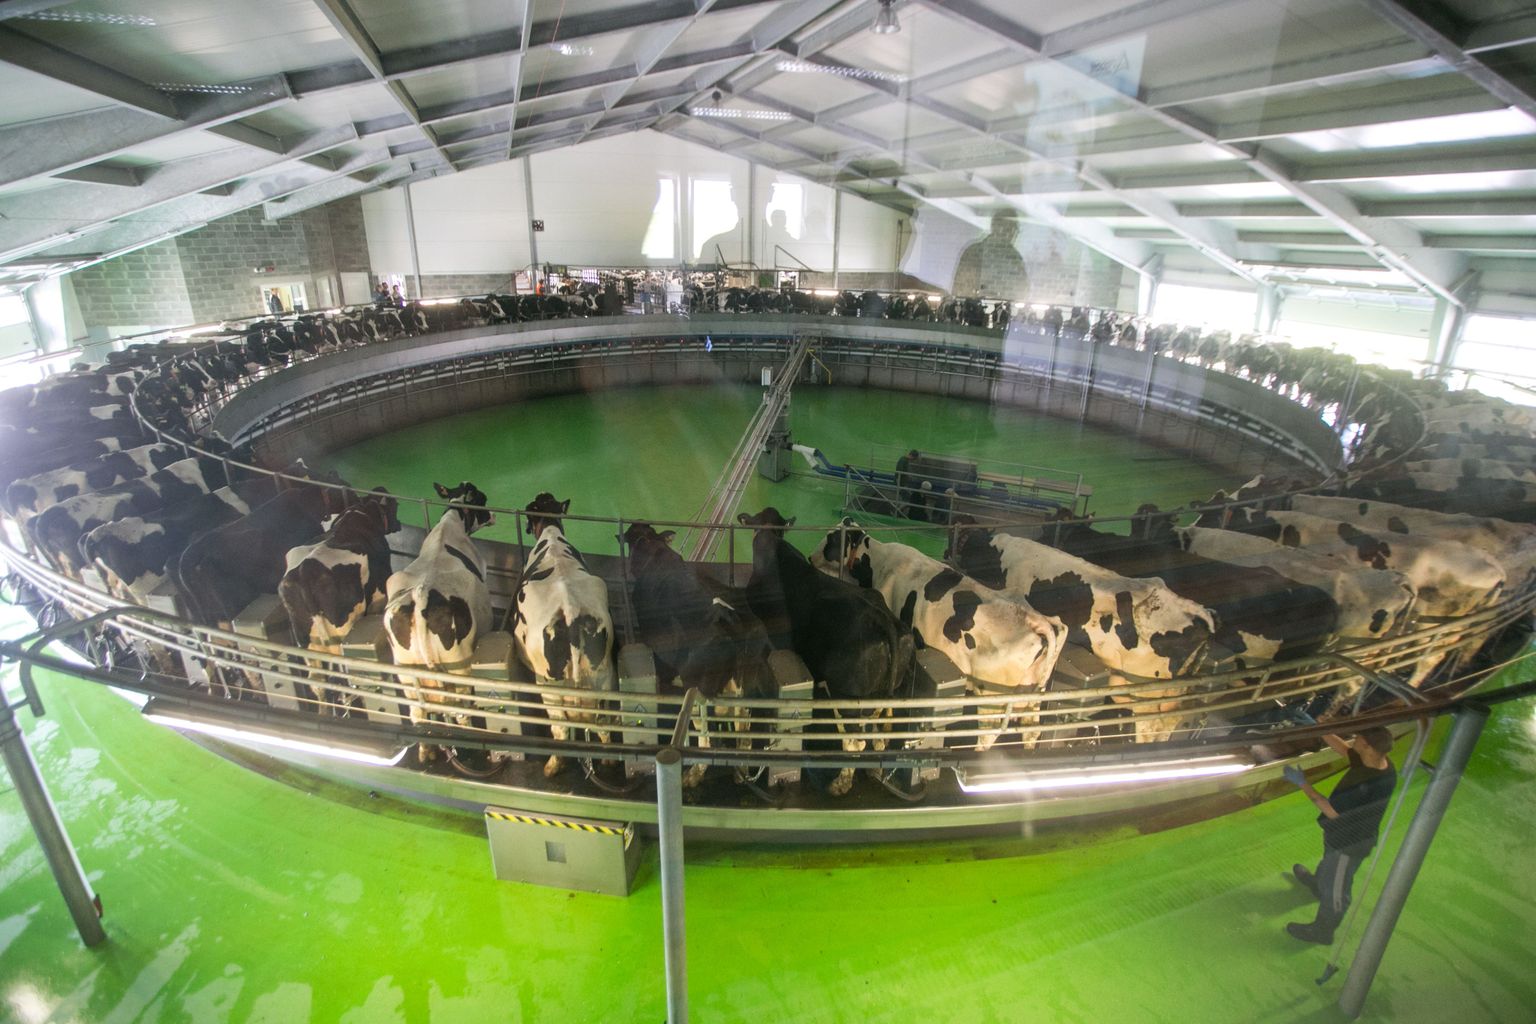 Lõõla farmikompleksi lüpsikarussell suudab ära lüpsta 3300 lehma.